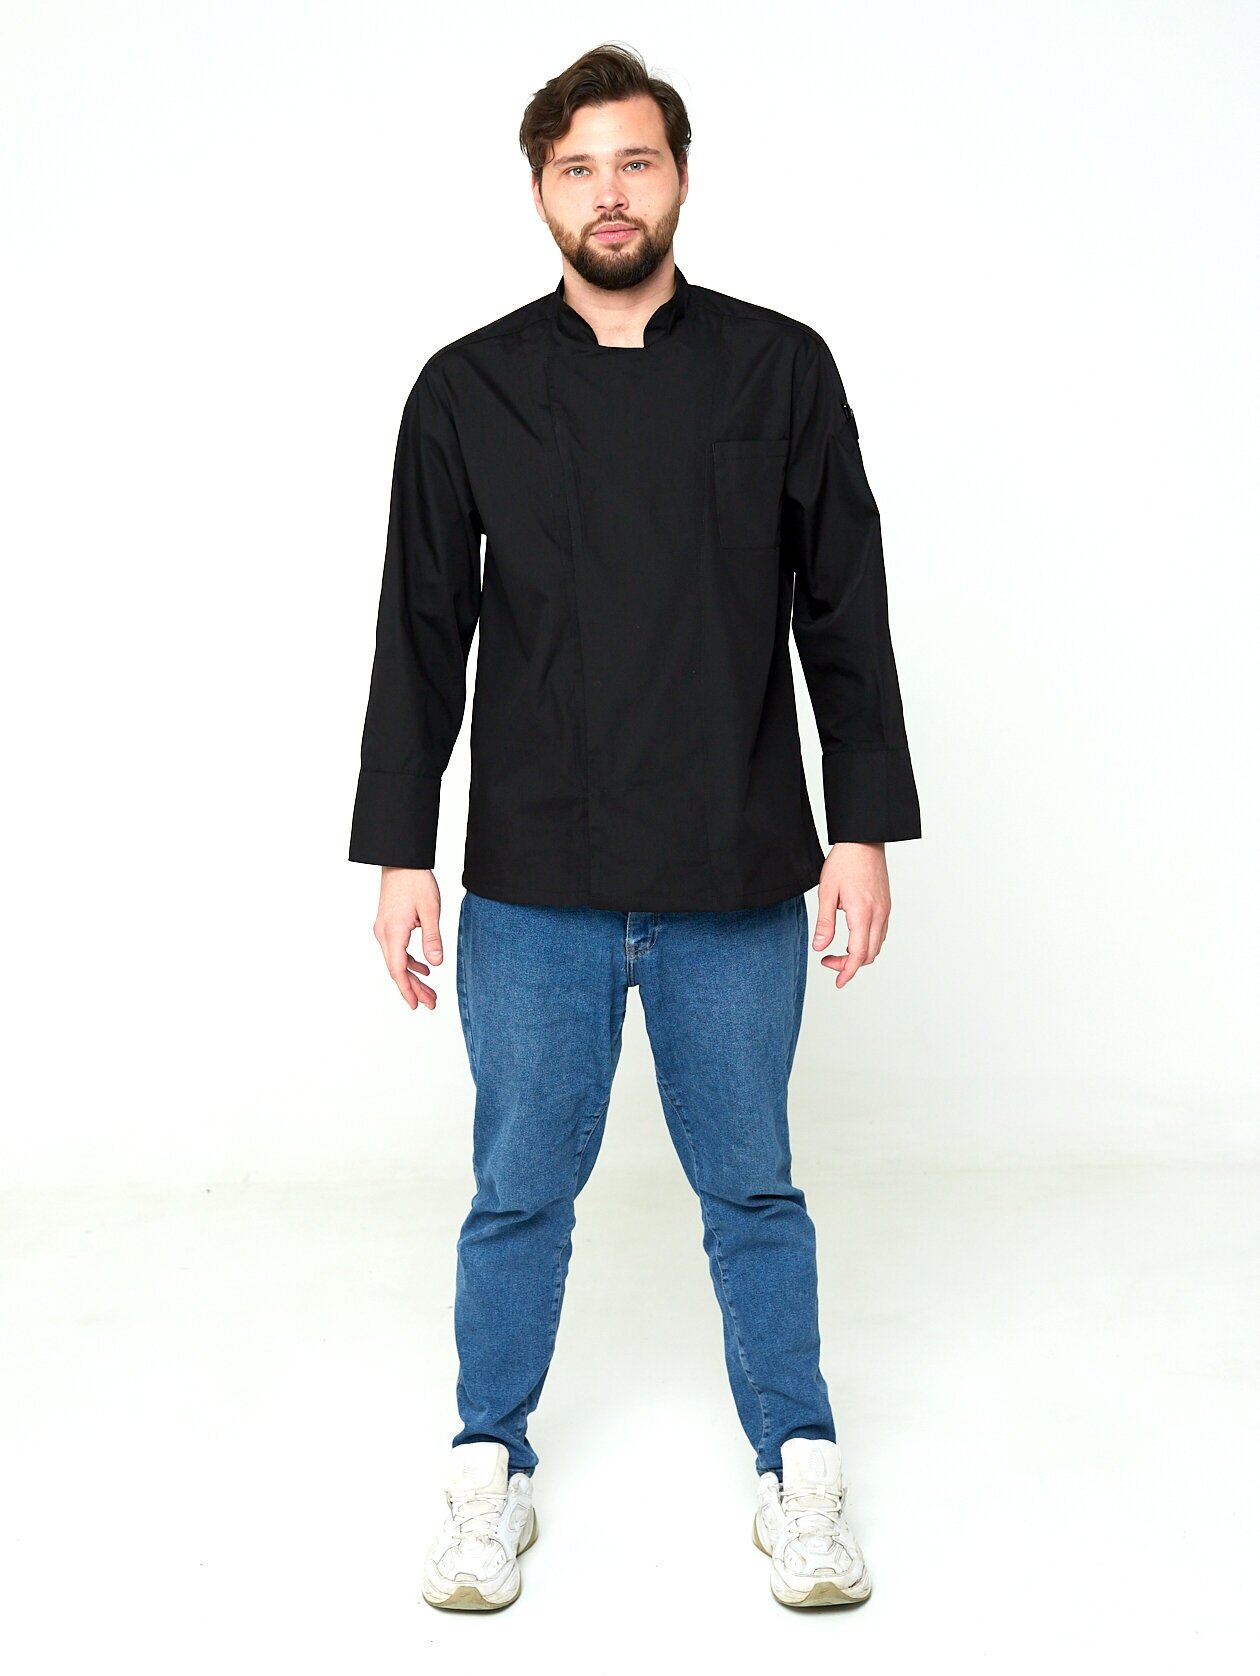 Китель мужской чёрный MATT с длинным рукавом/ размер 46/одежда повара/рубашка рабочая/китель поварской мужской/униформа поварская/куртка поварская